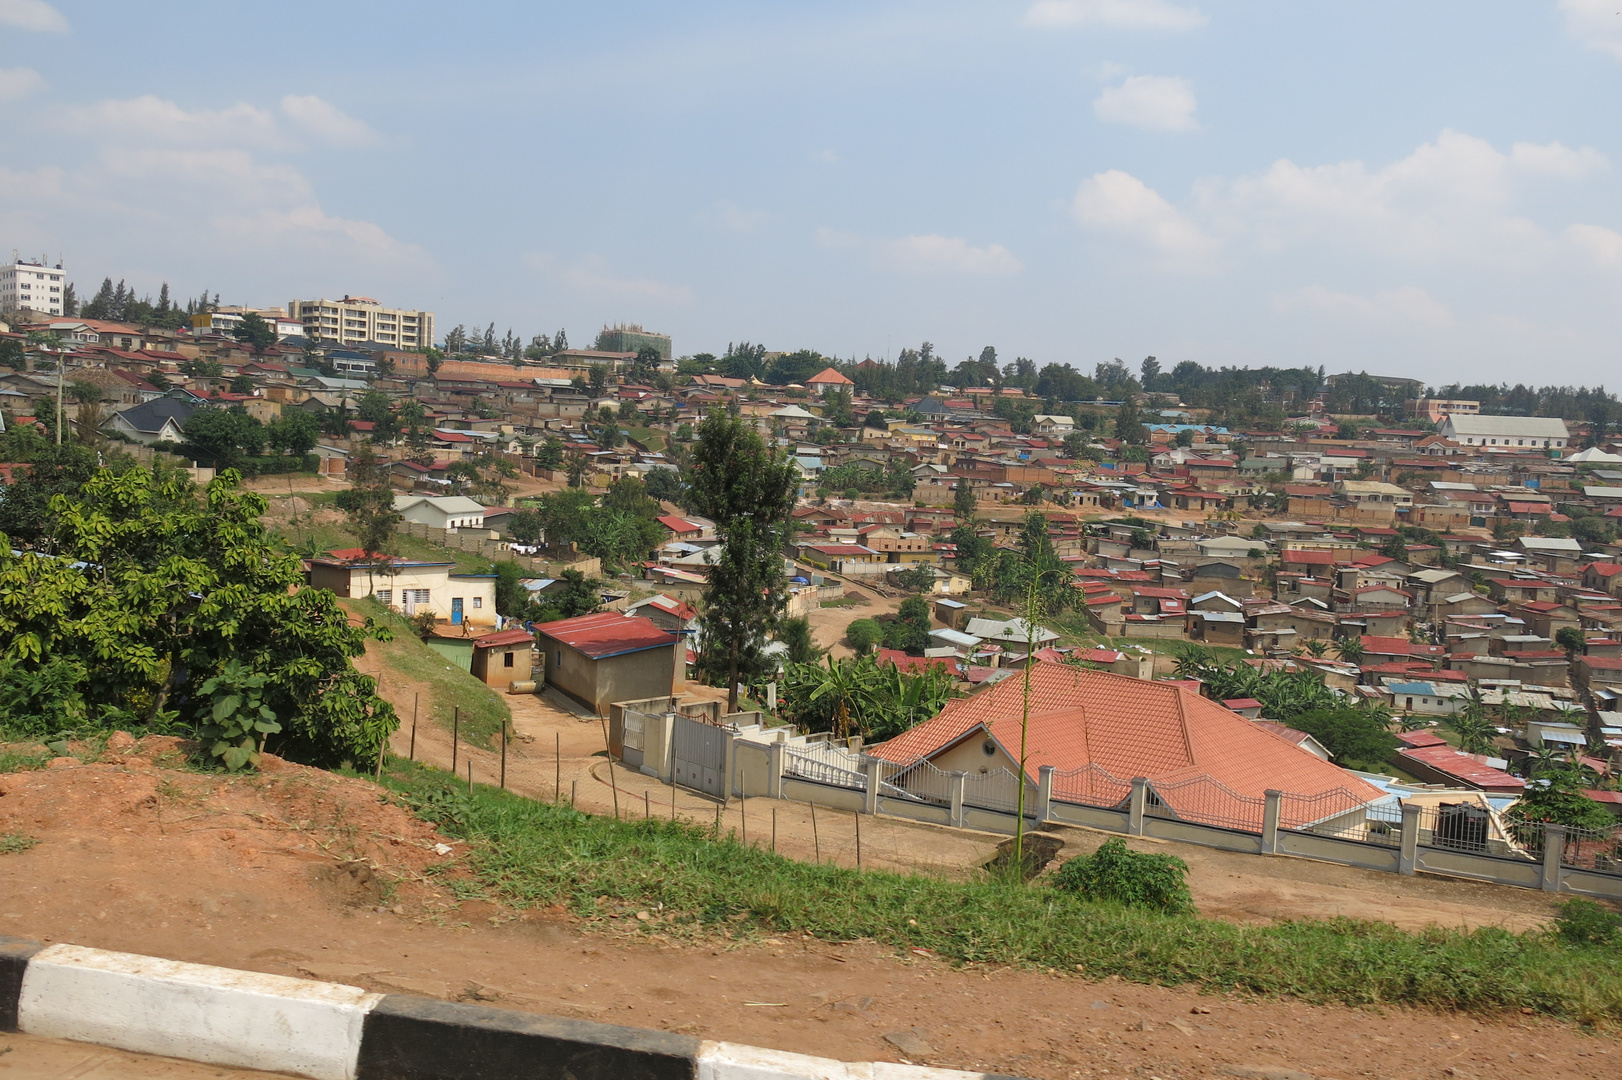 Kibagabaga in Kigali